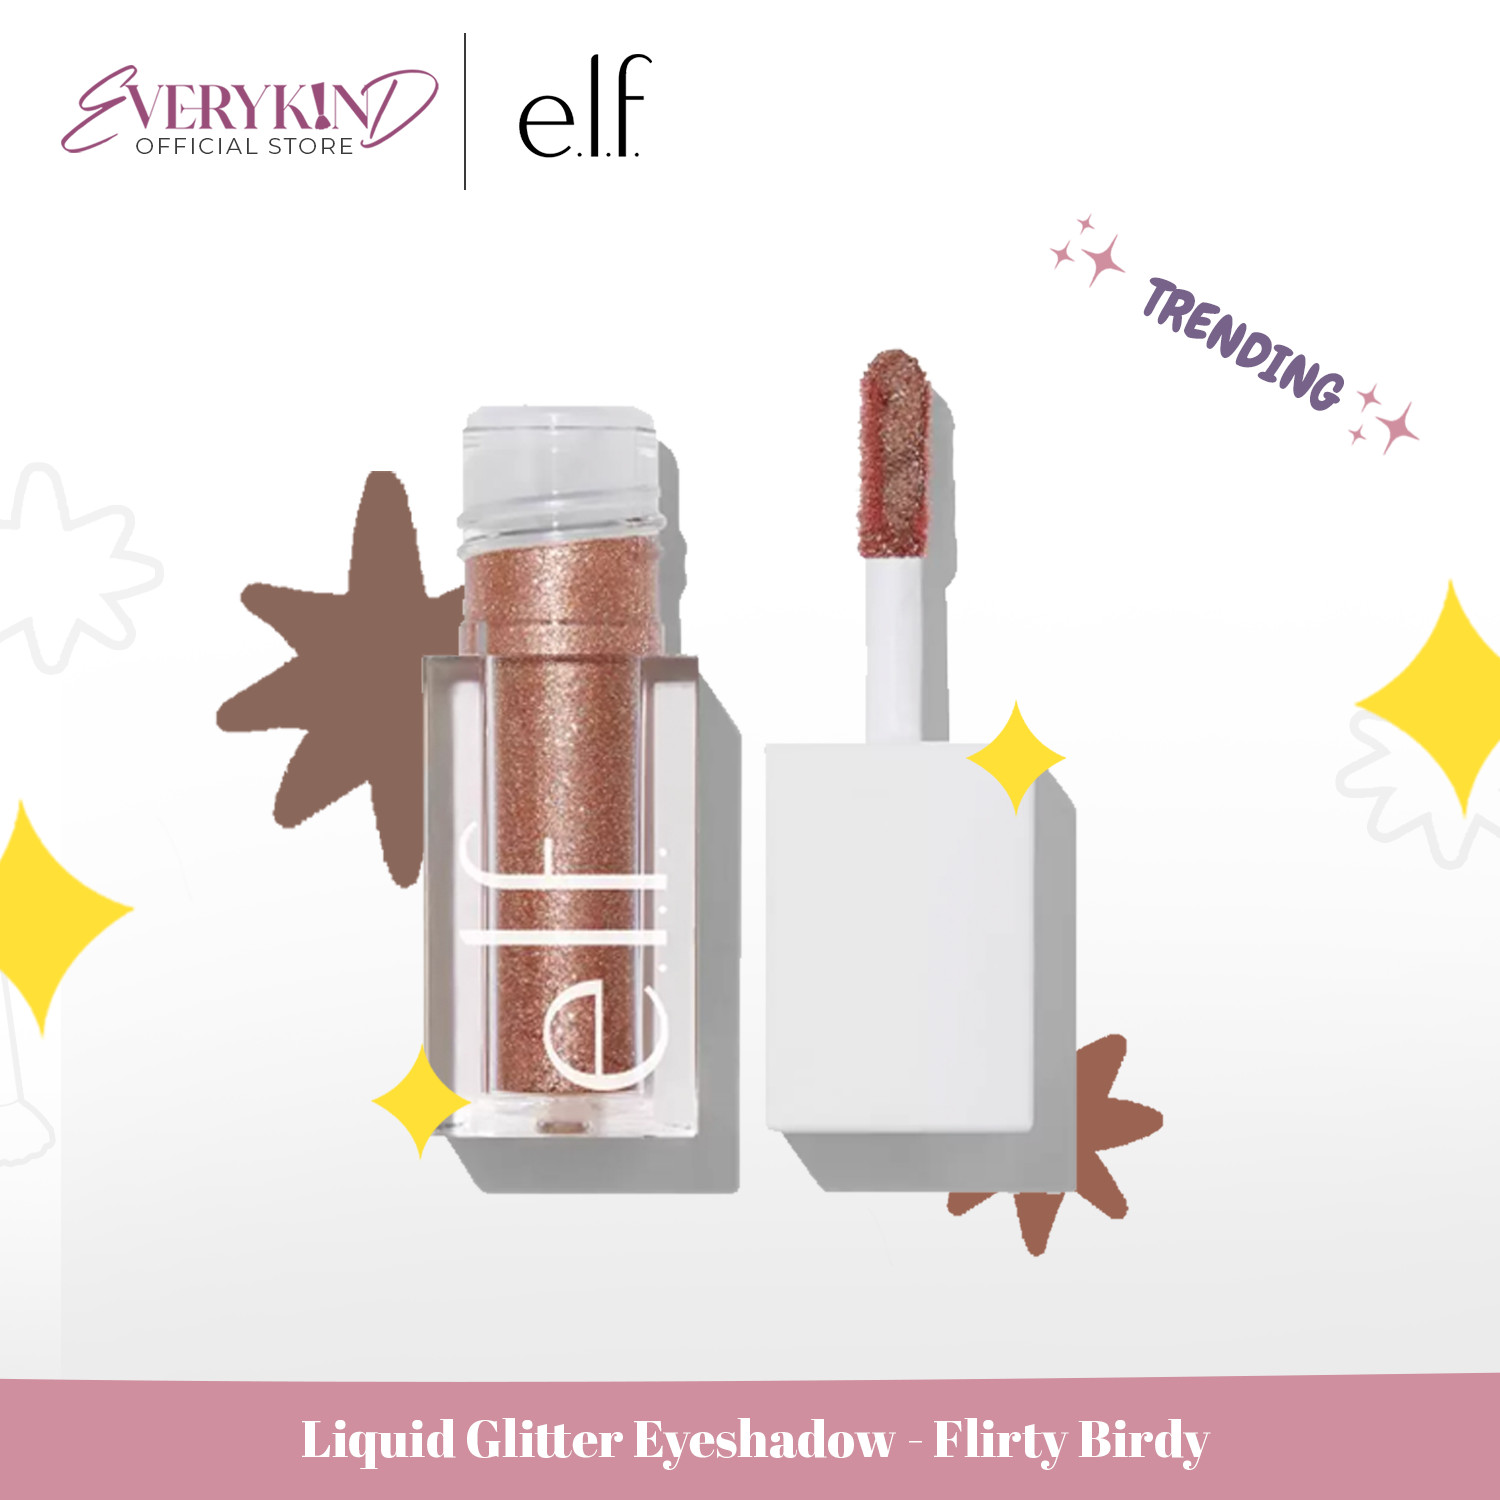 E.l.f., Liquid Glitter Eyeshadow, Flirty Birdy